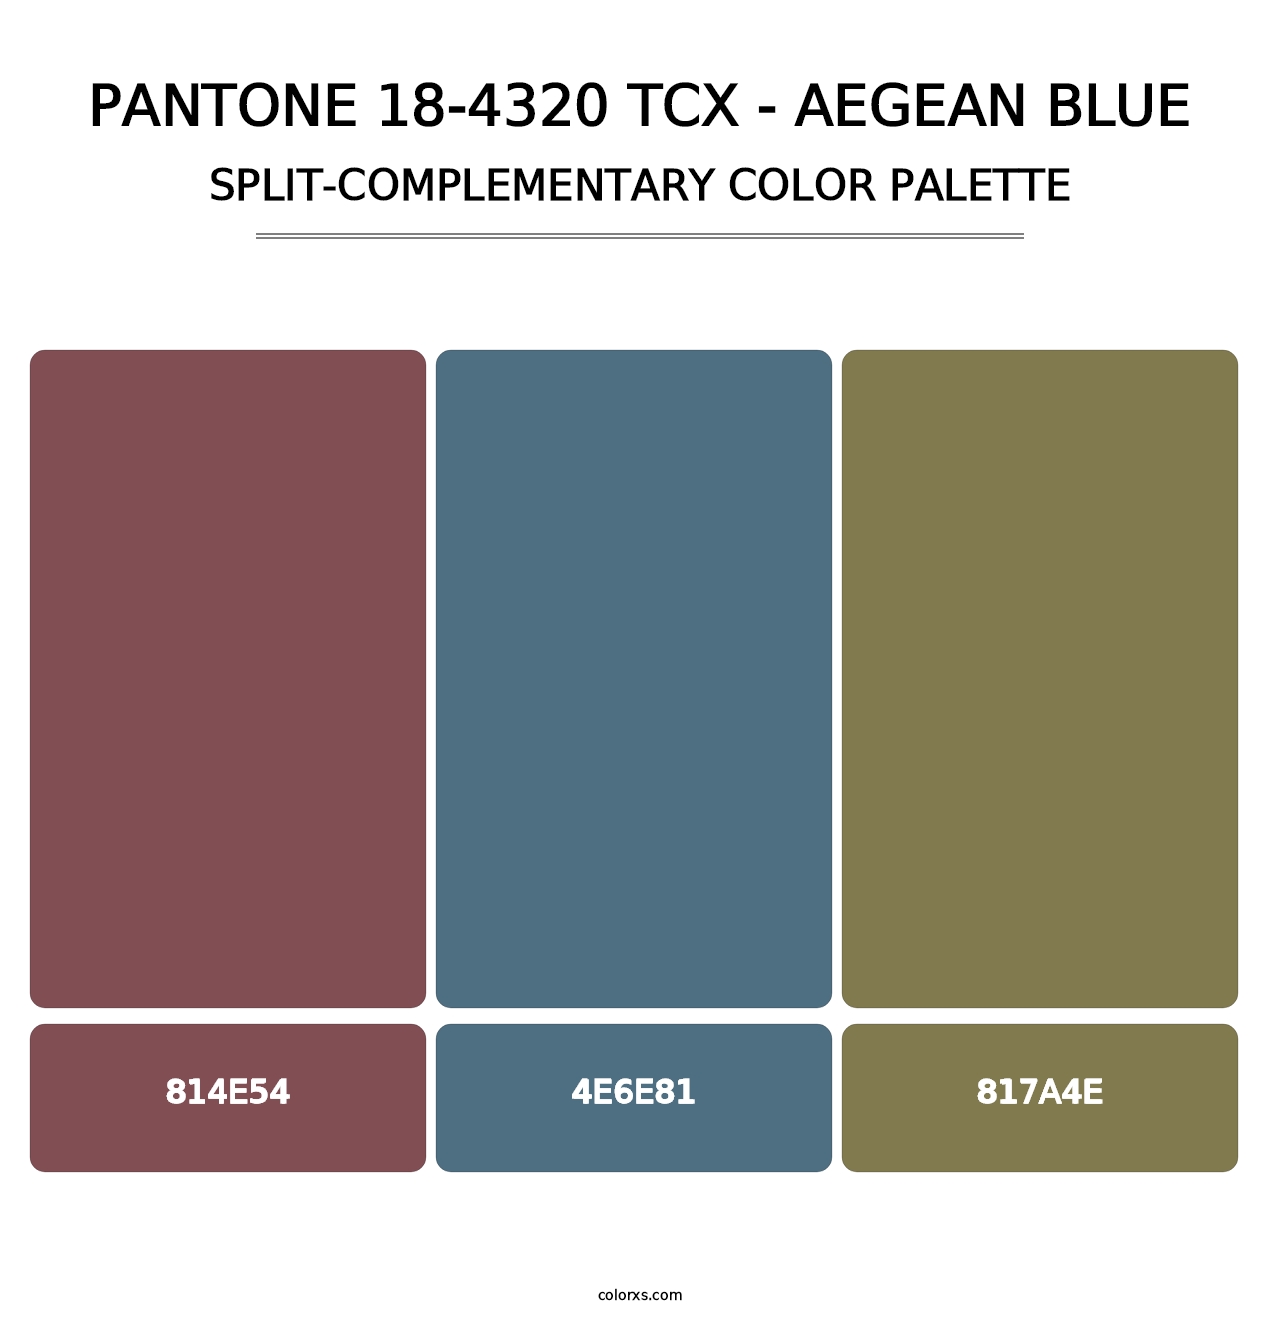 PANTONE 18-4320 TCX - Aegean Blue - Split-Complementary Color Palette